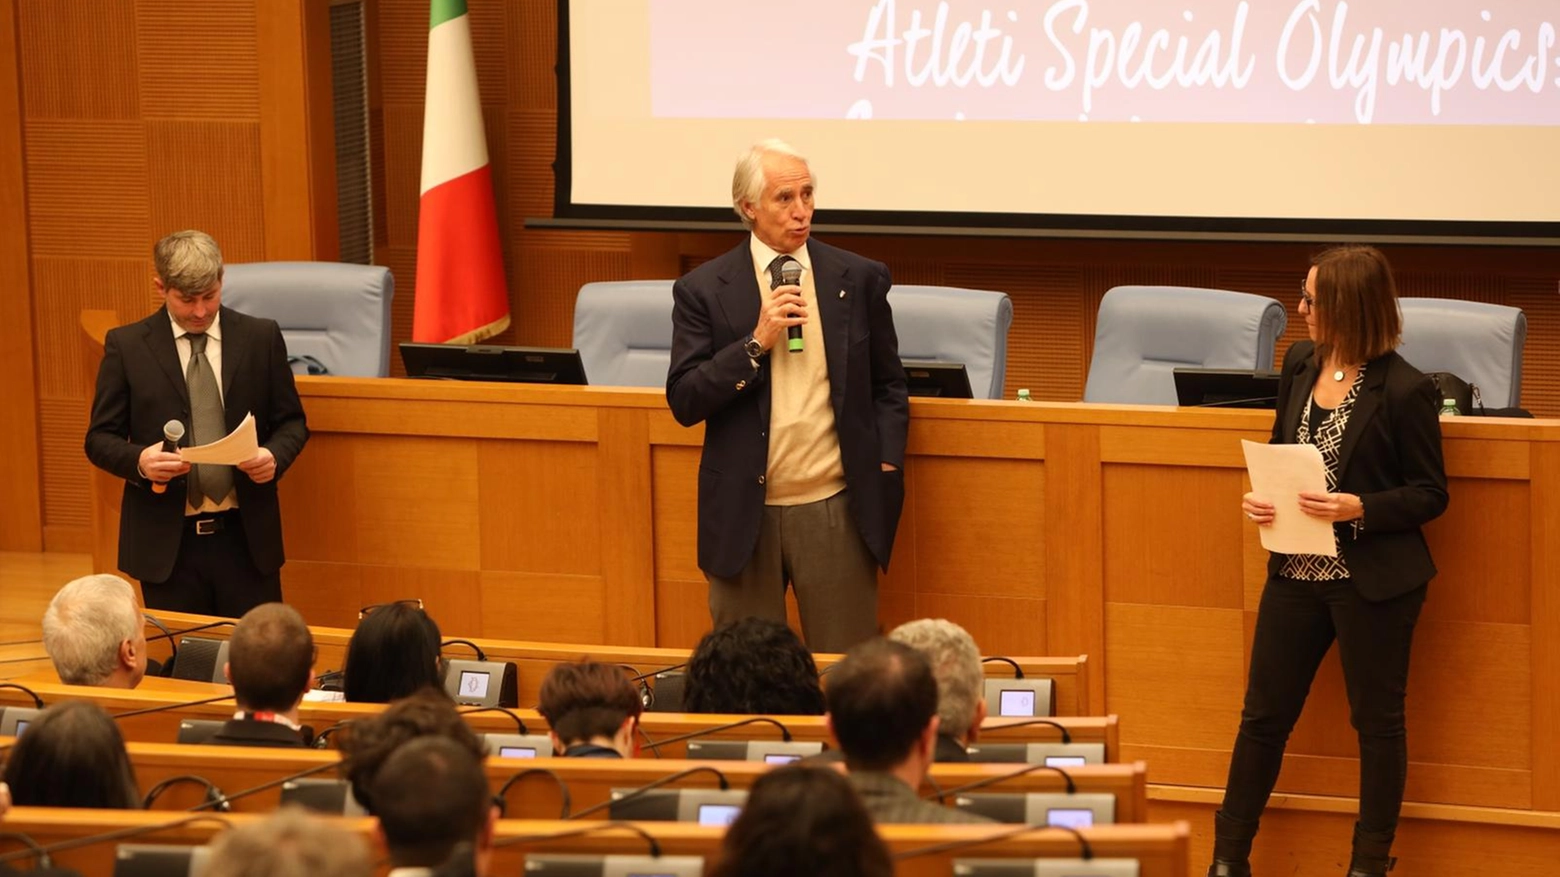 L'incontro in Parlamento di Special Olympics Italia alla presenza di Malagò